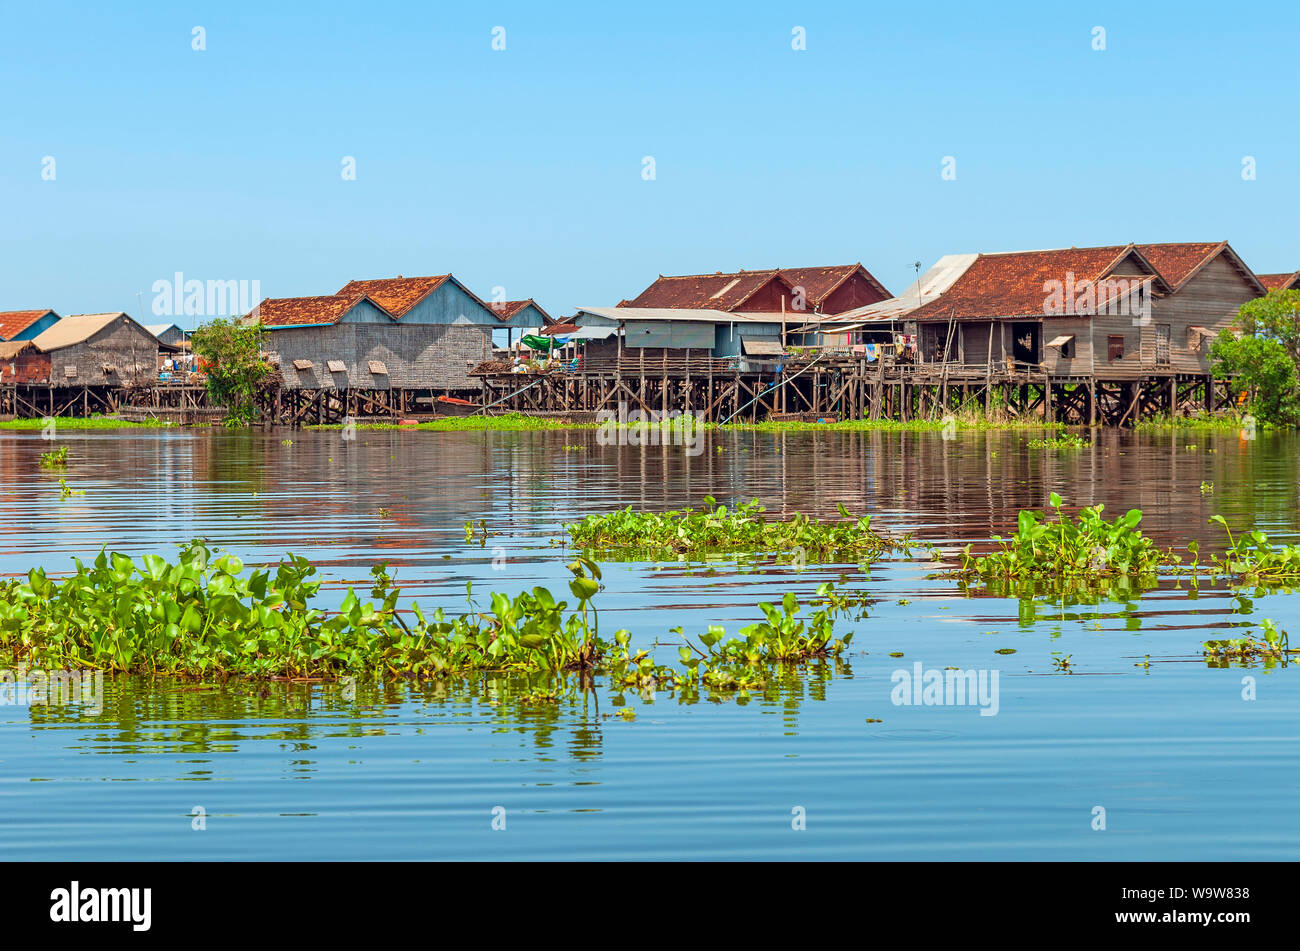 Les couleurs des maisons sur pilotis dans le village flottant de Kompong Khleang par le lac Tonlé Sap, Siem Reap, Angkor, Cambodge région. Banque D'Images